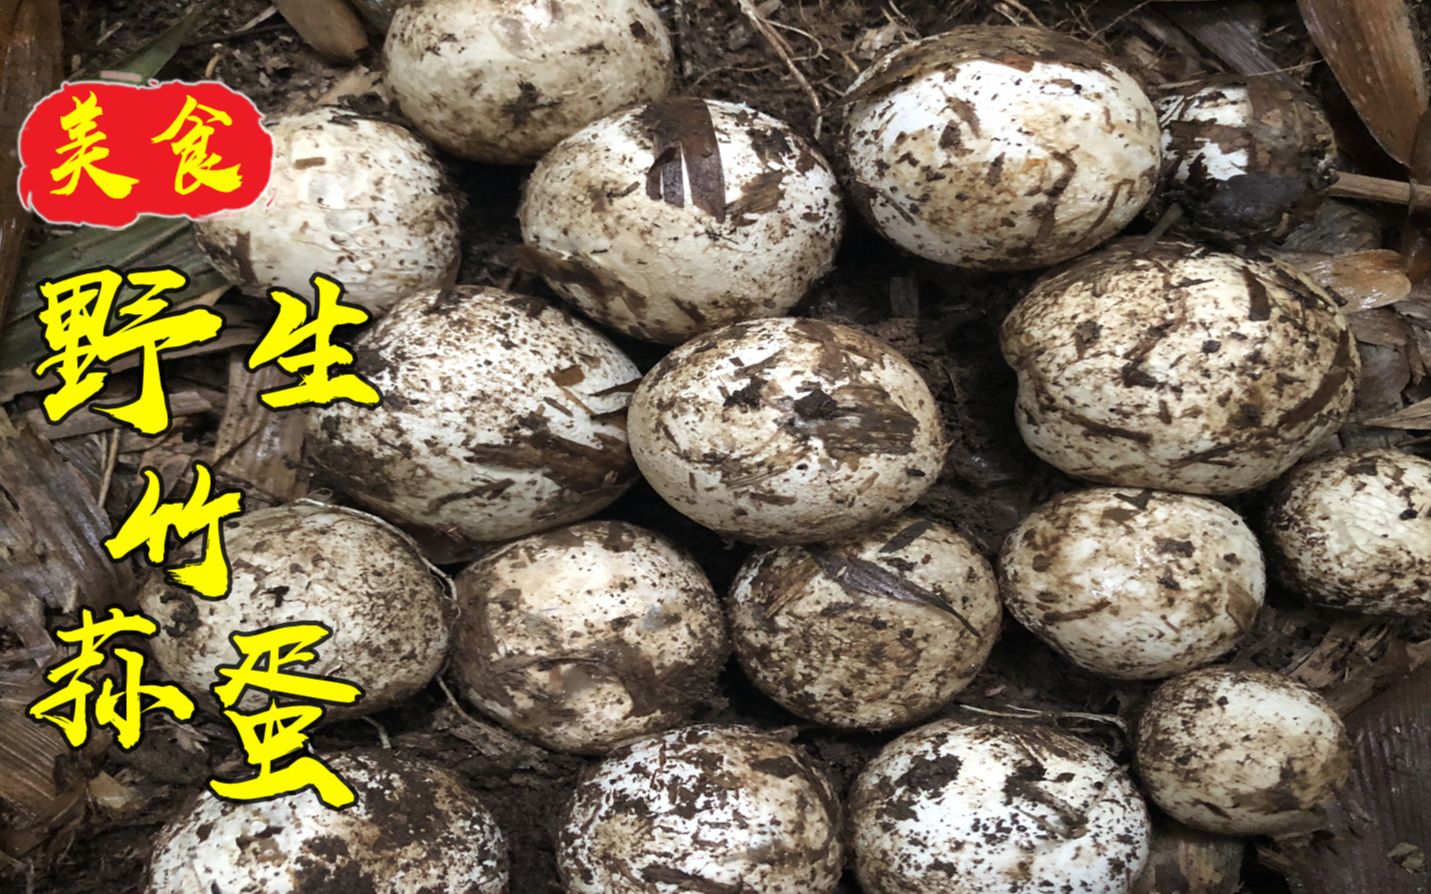 四川农村,七哥蜀南竹海捡到20个竹荪蛋,老婆说美容又养颜